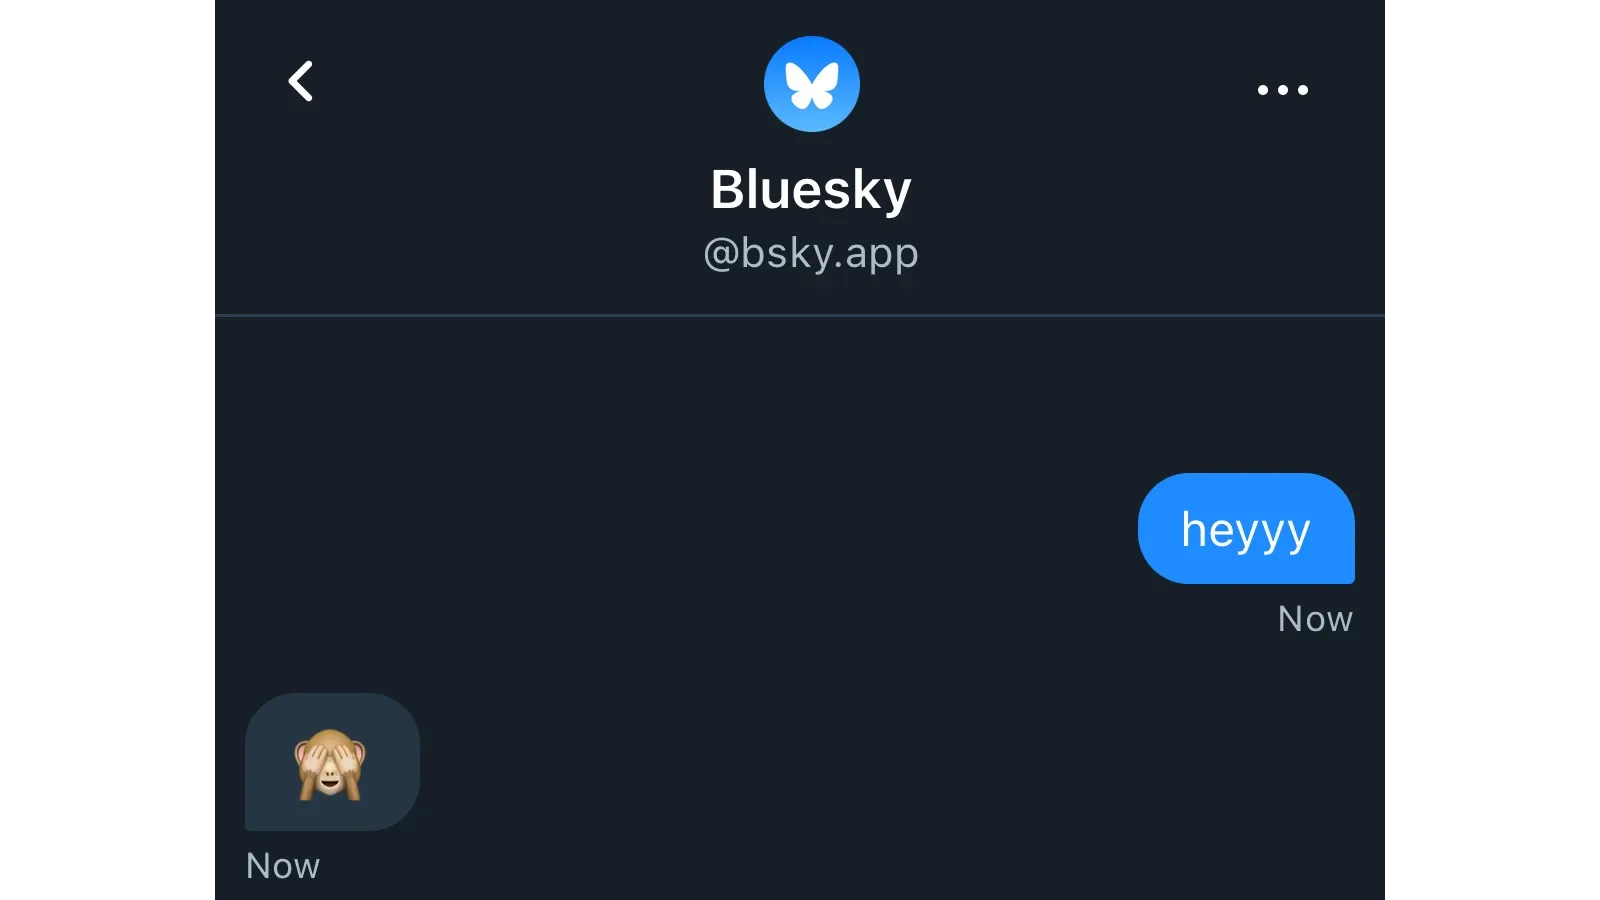 Bluesky Direct Messages